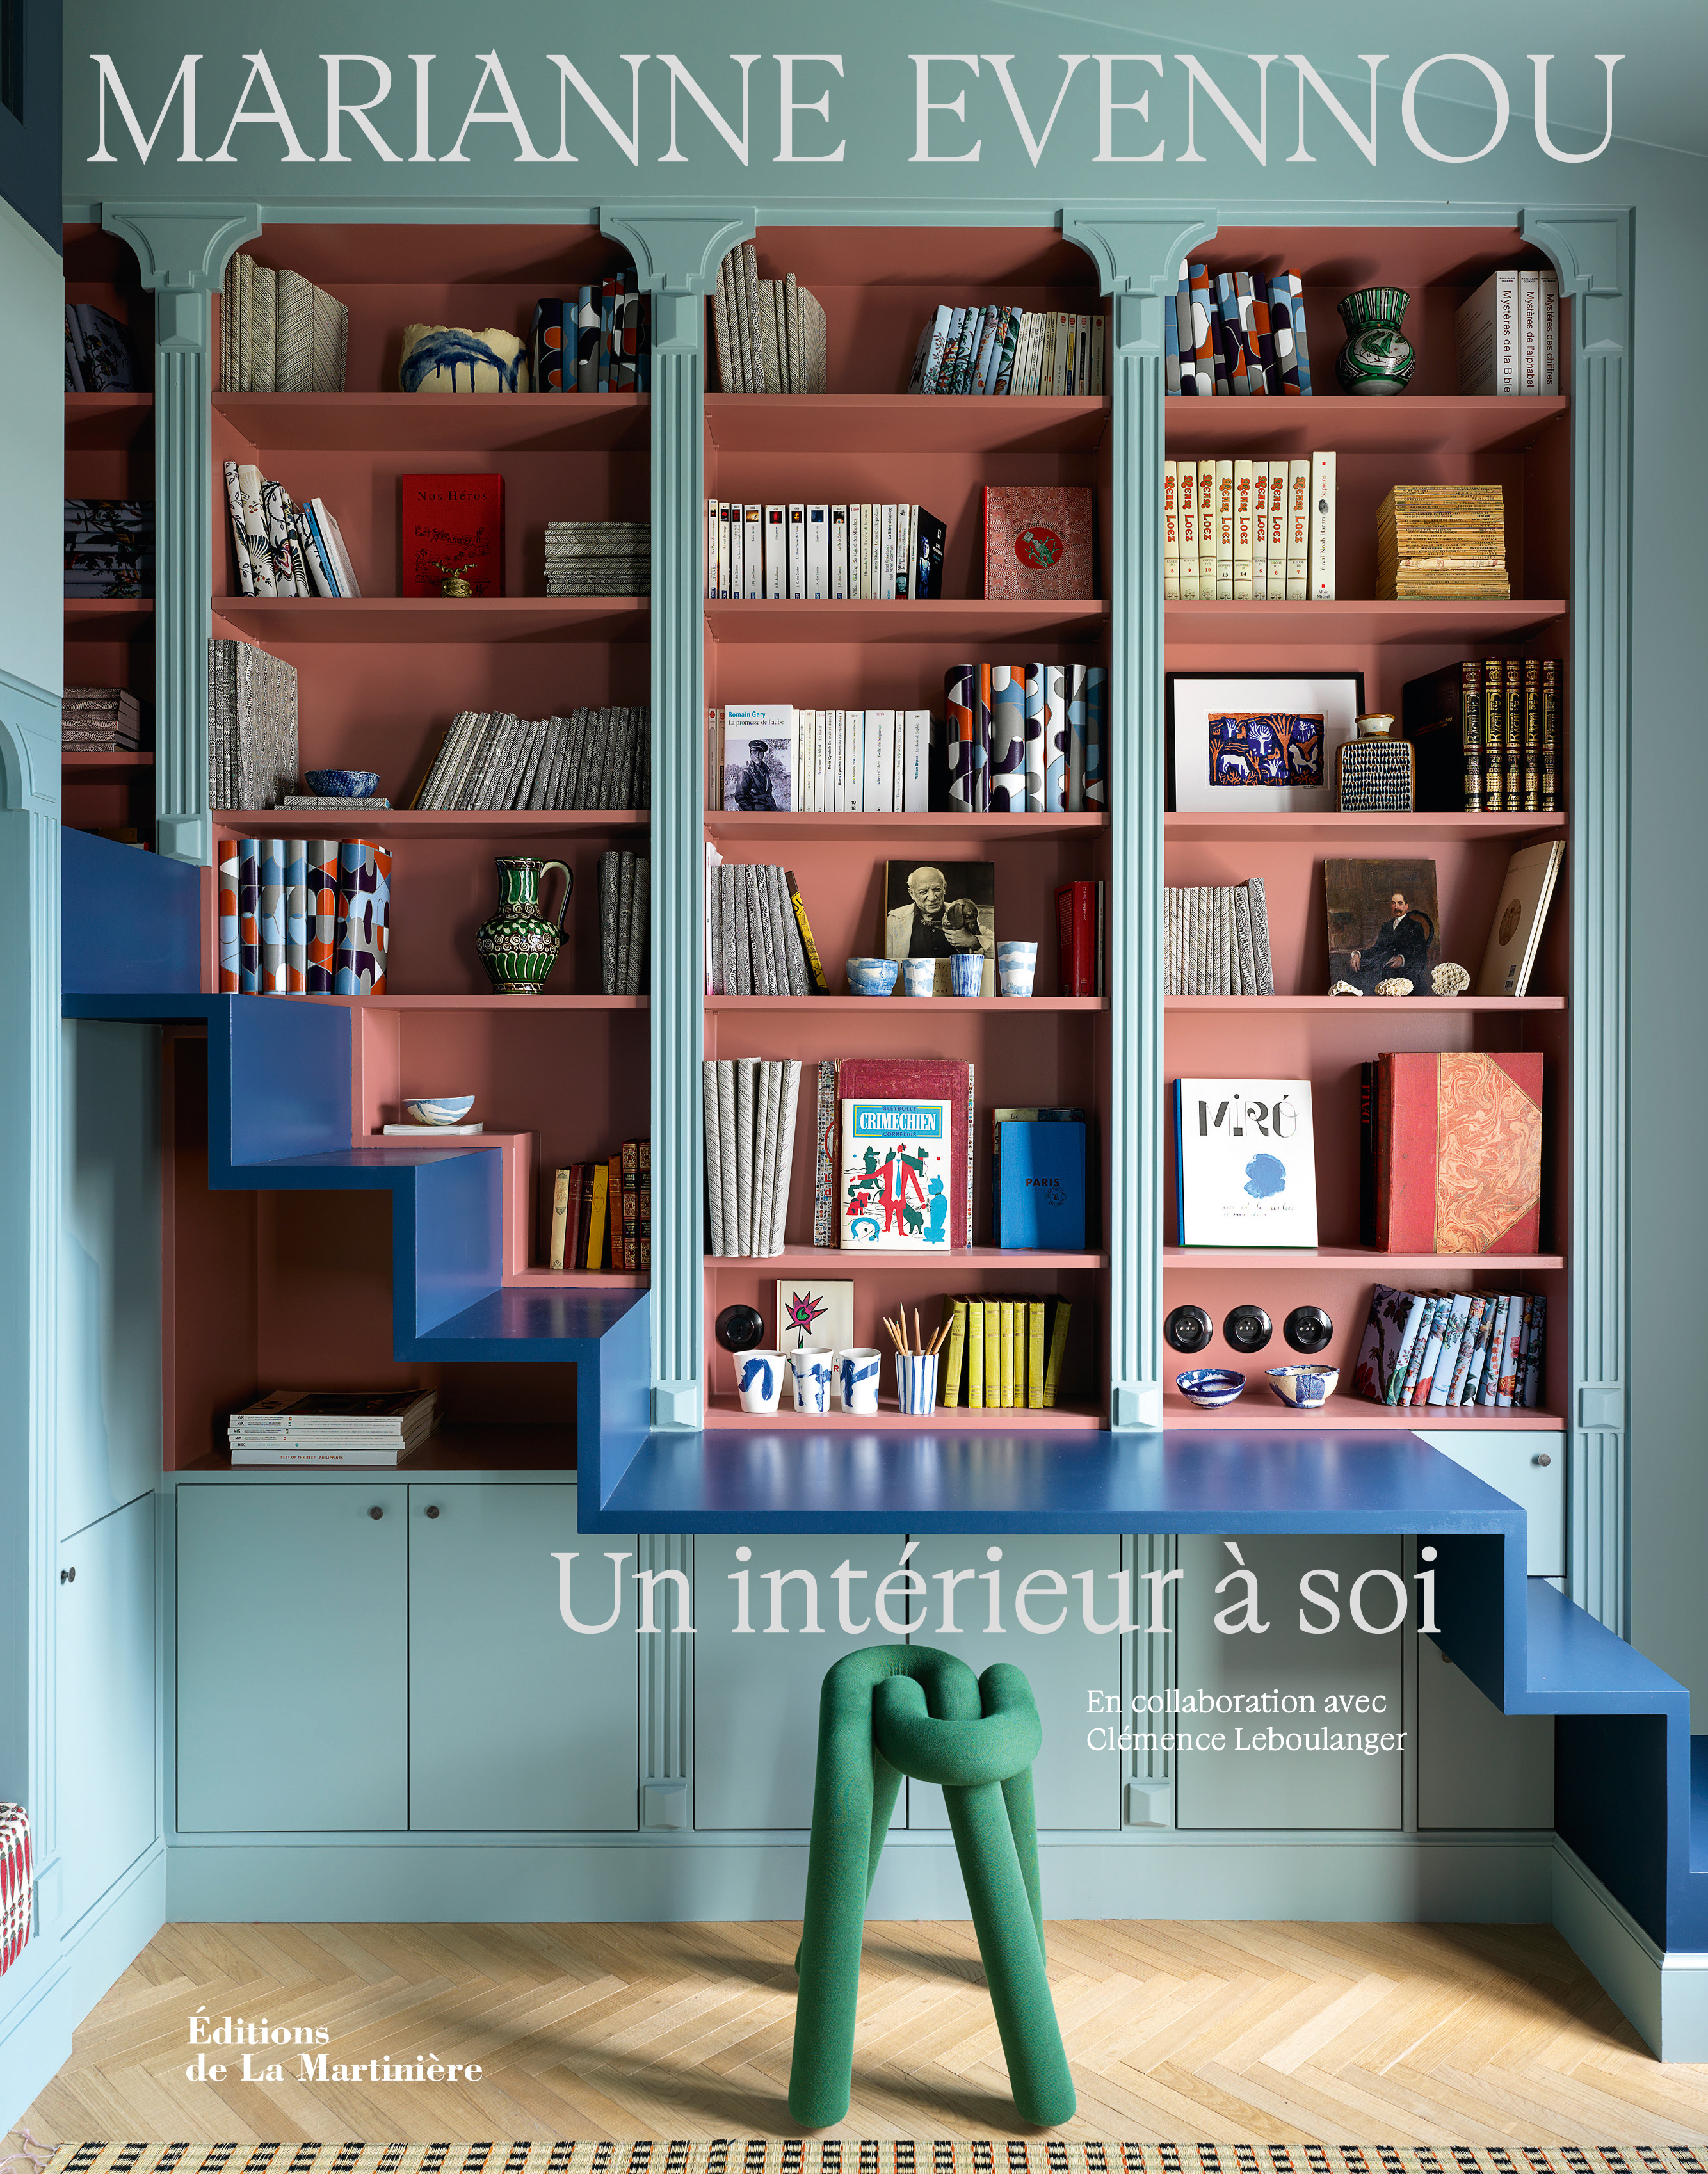 un intérieur à soi, €38, is available from publisher Édit 27